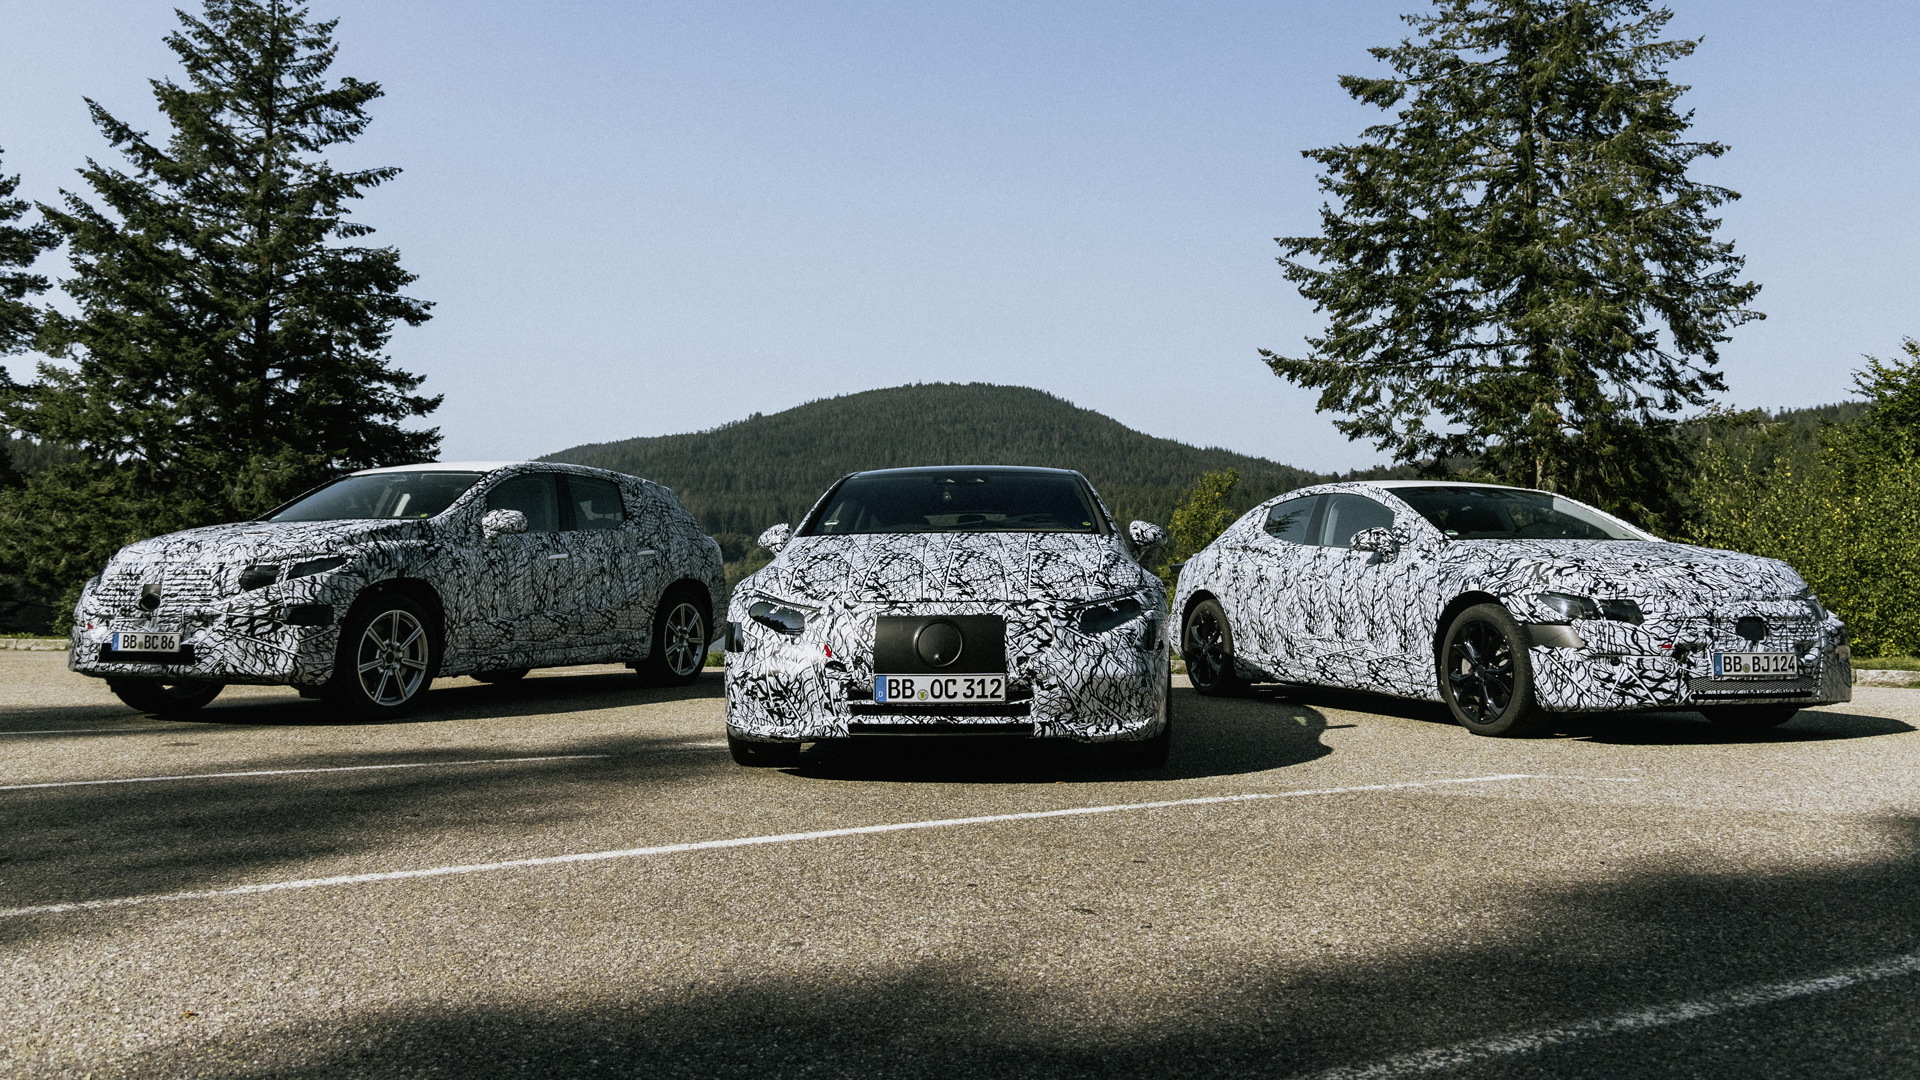 Prototypes for Mercedes-Benz EVs based on EVA platform